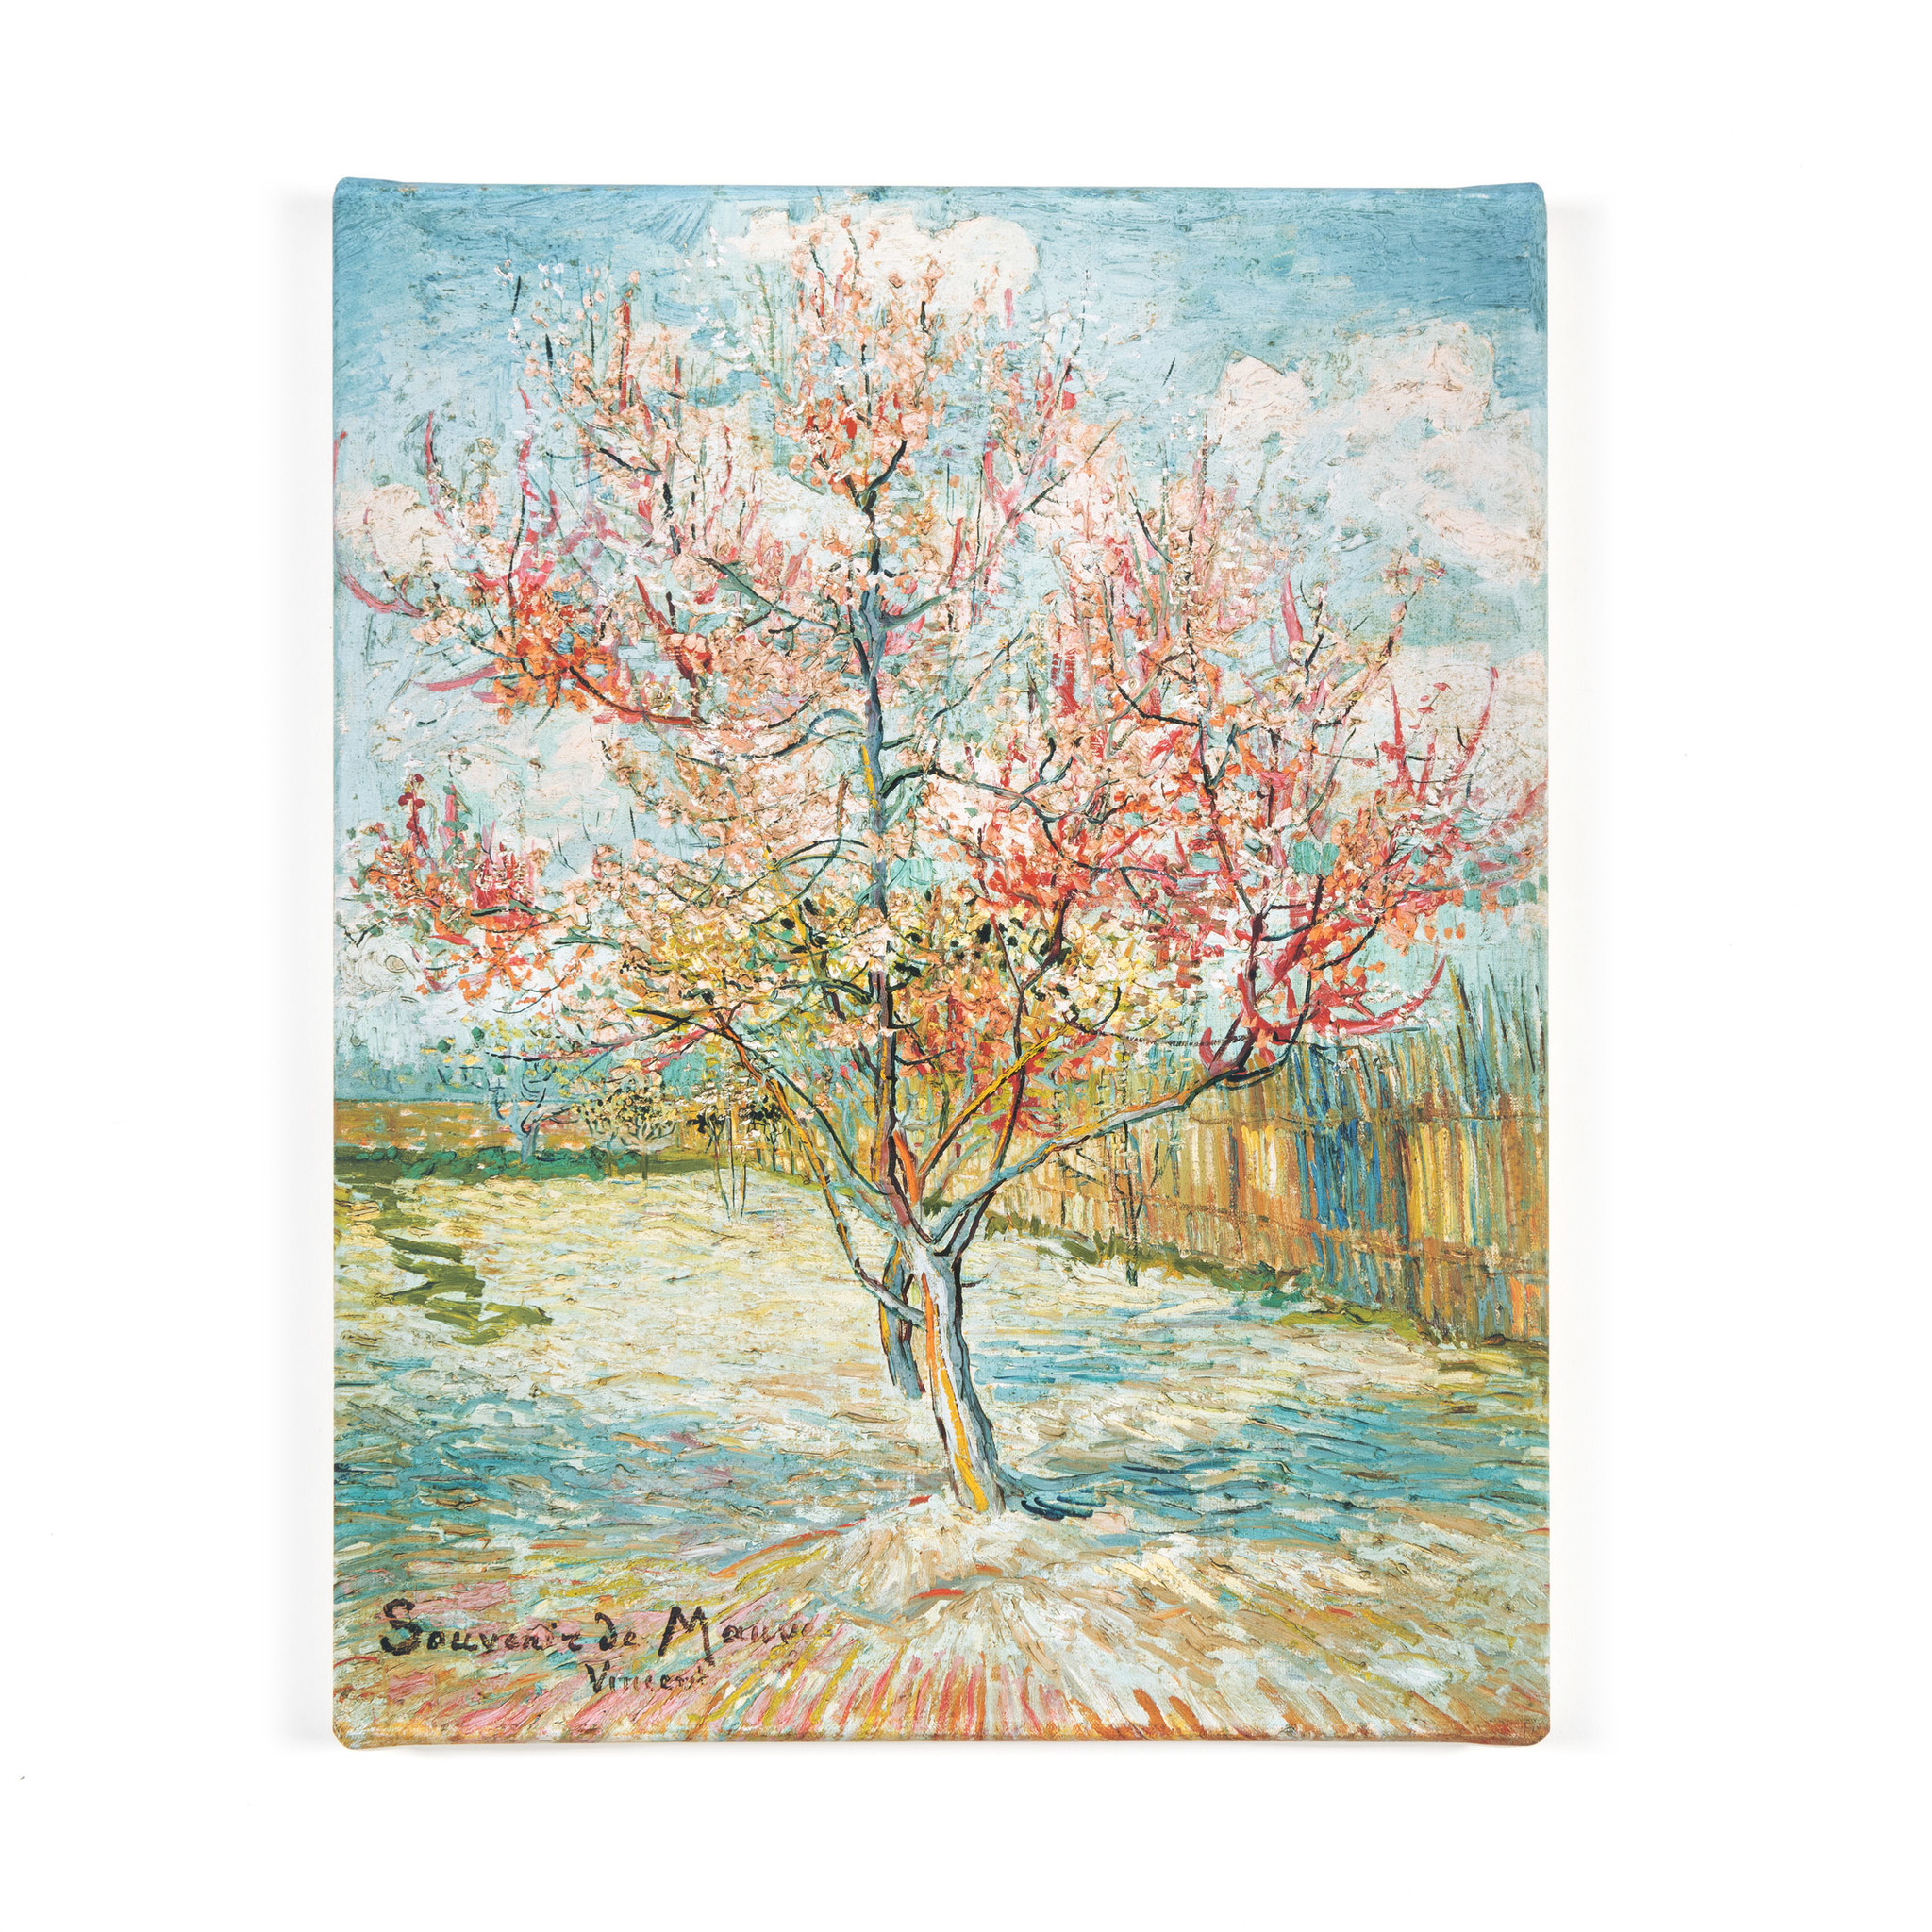 Reproductie canvas Van Gogh Roze perzikbomen ('Souvenir de Mauve')